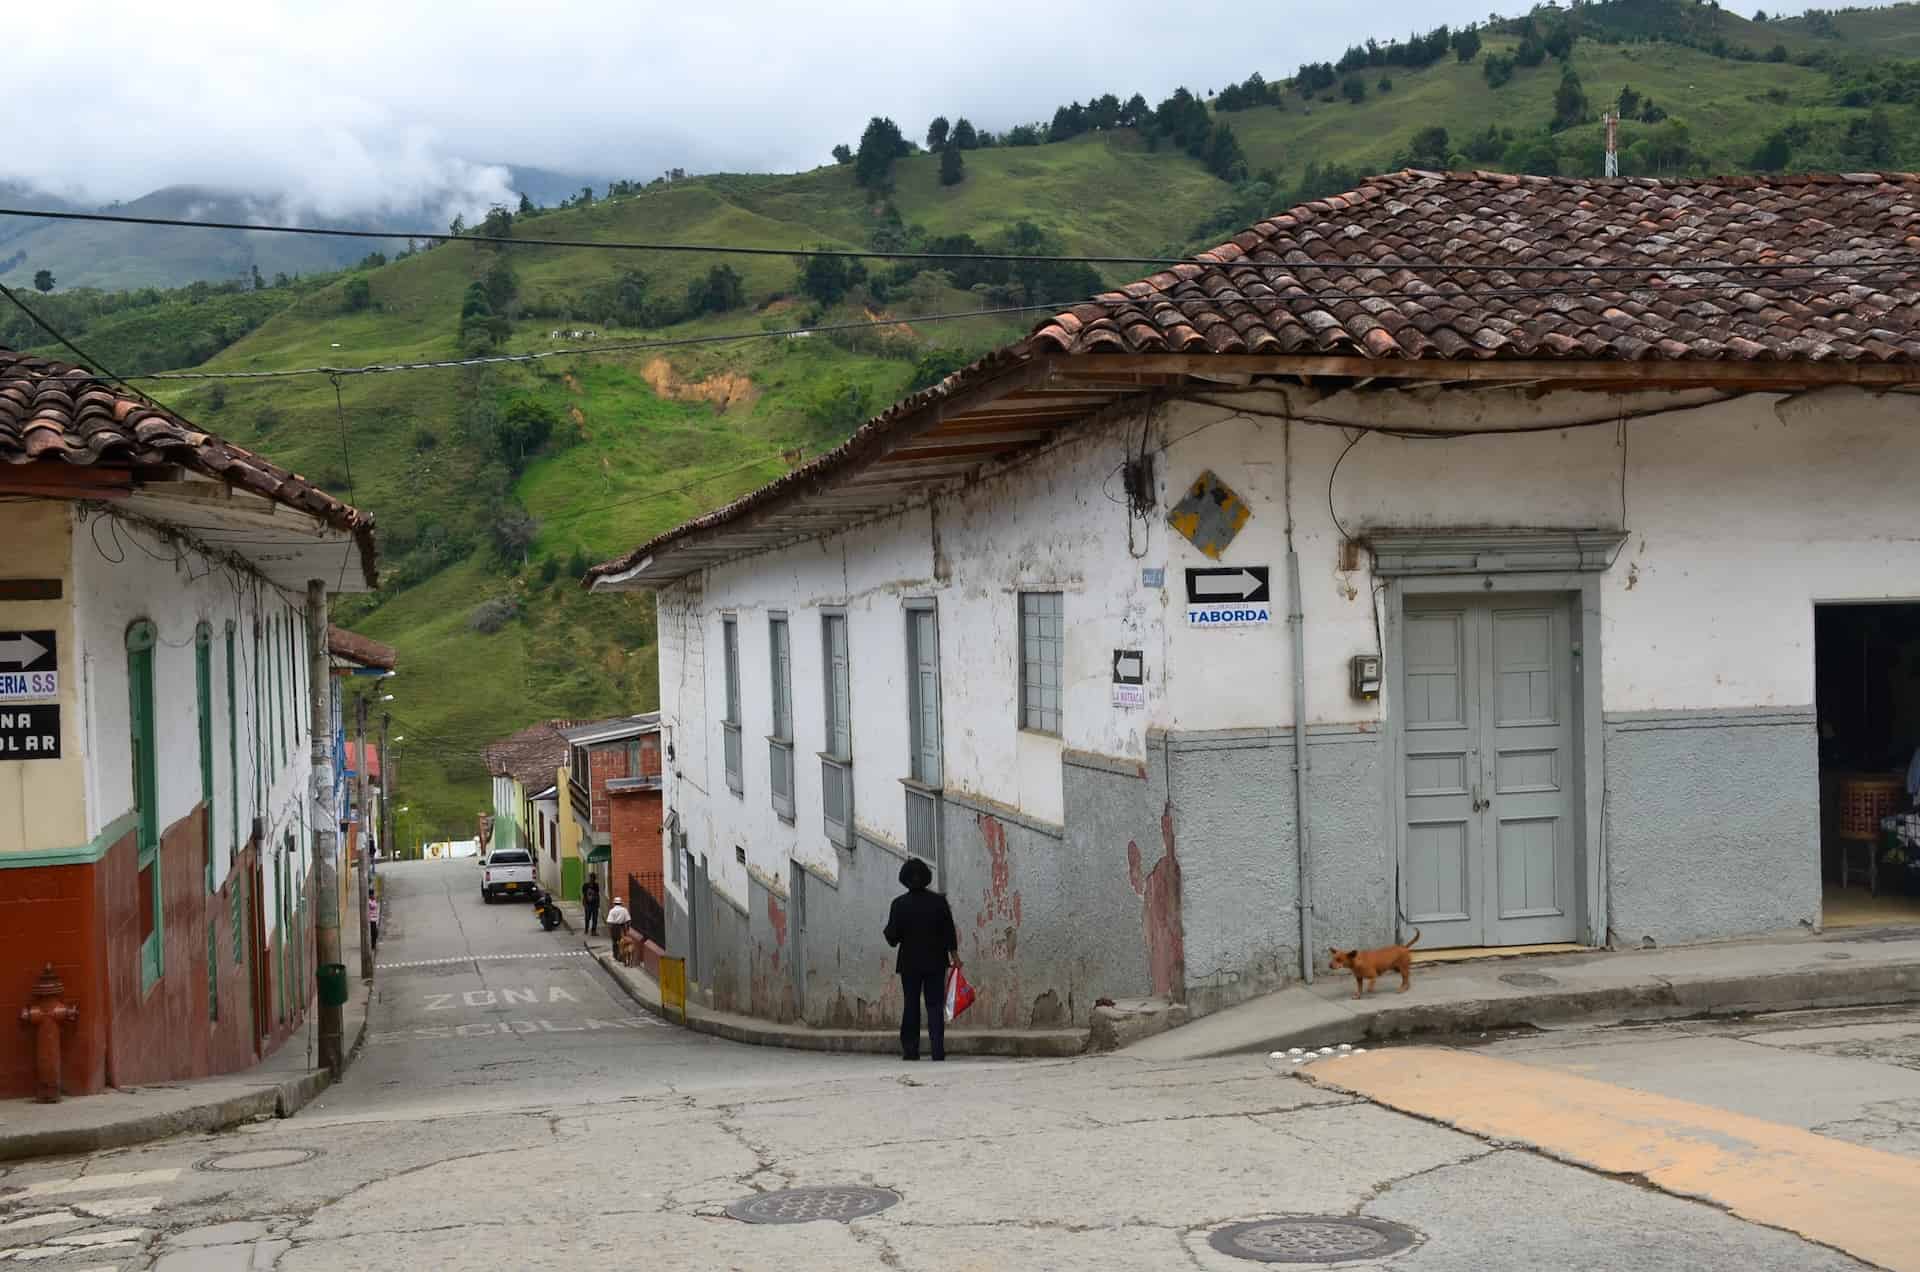 A street in Pácora, Caldas, Colombia